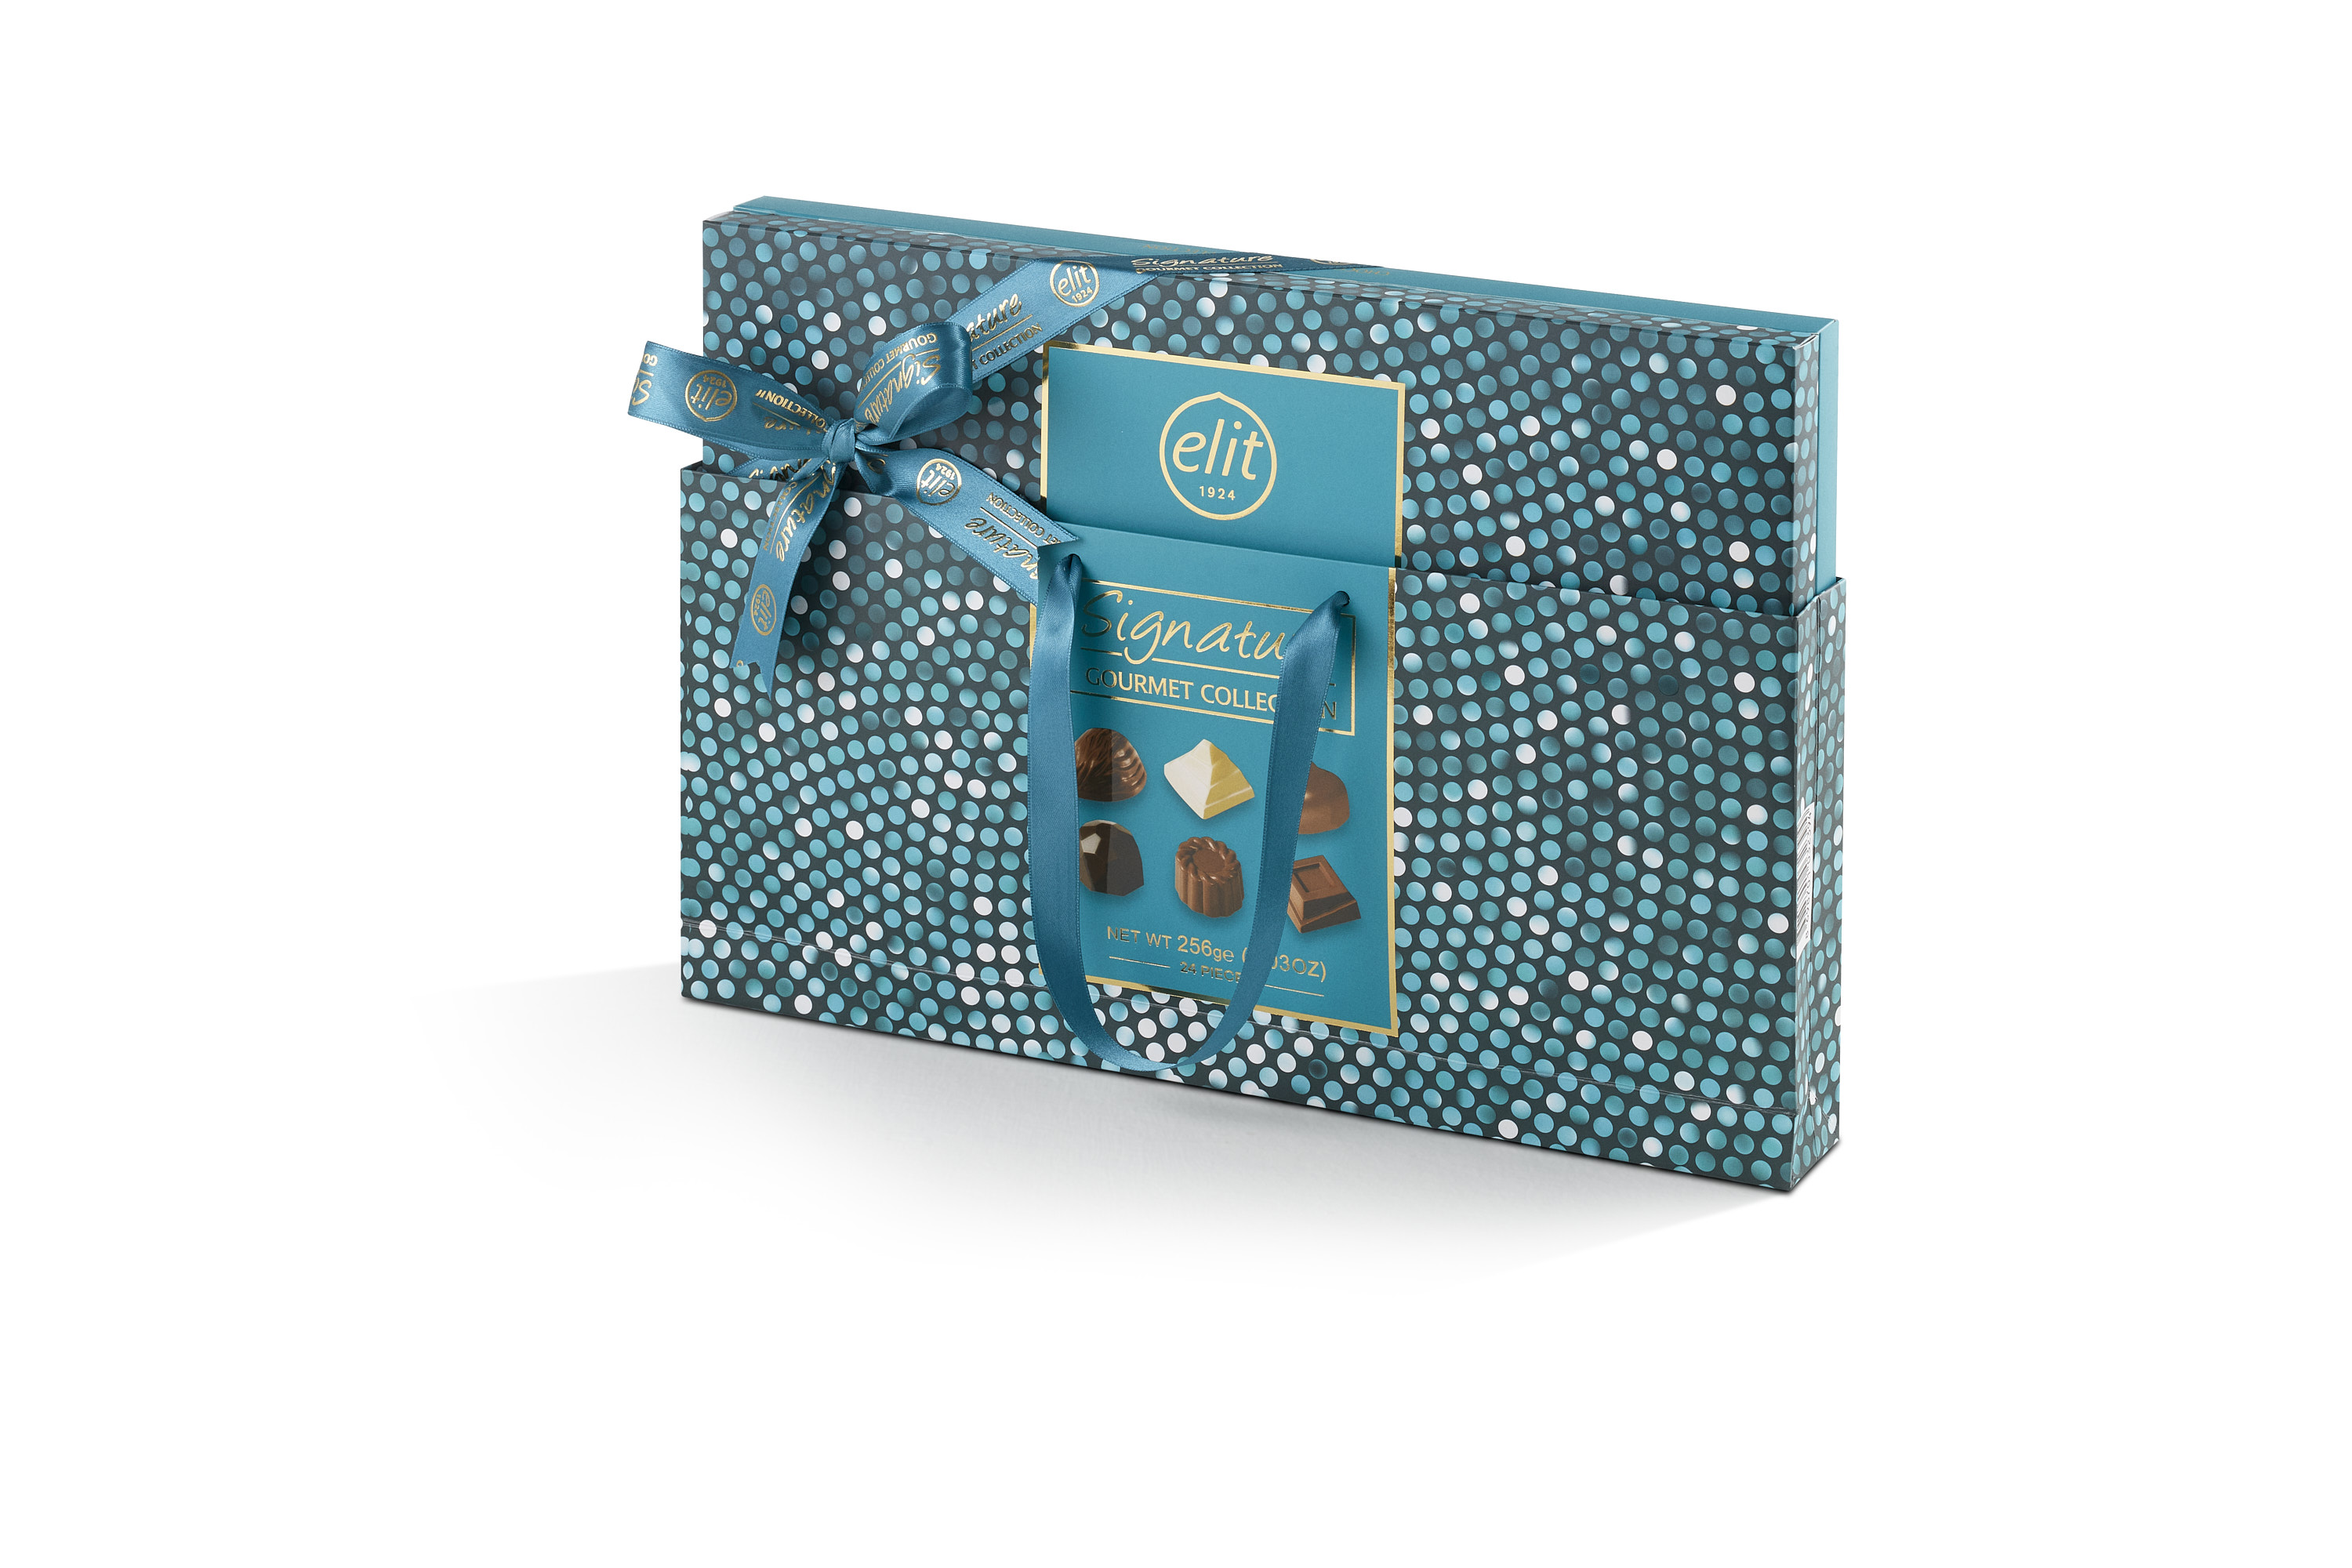 91007458 «Signature Gourmet Collection». Шоколадные конфеты ассорти, синяя, с сумочкой, 256гр  "Elit 1924"